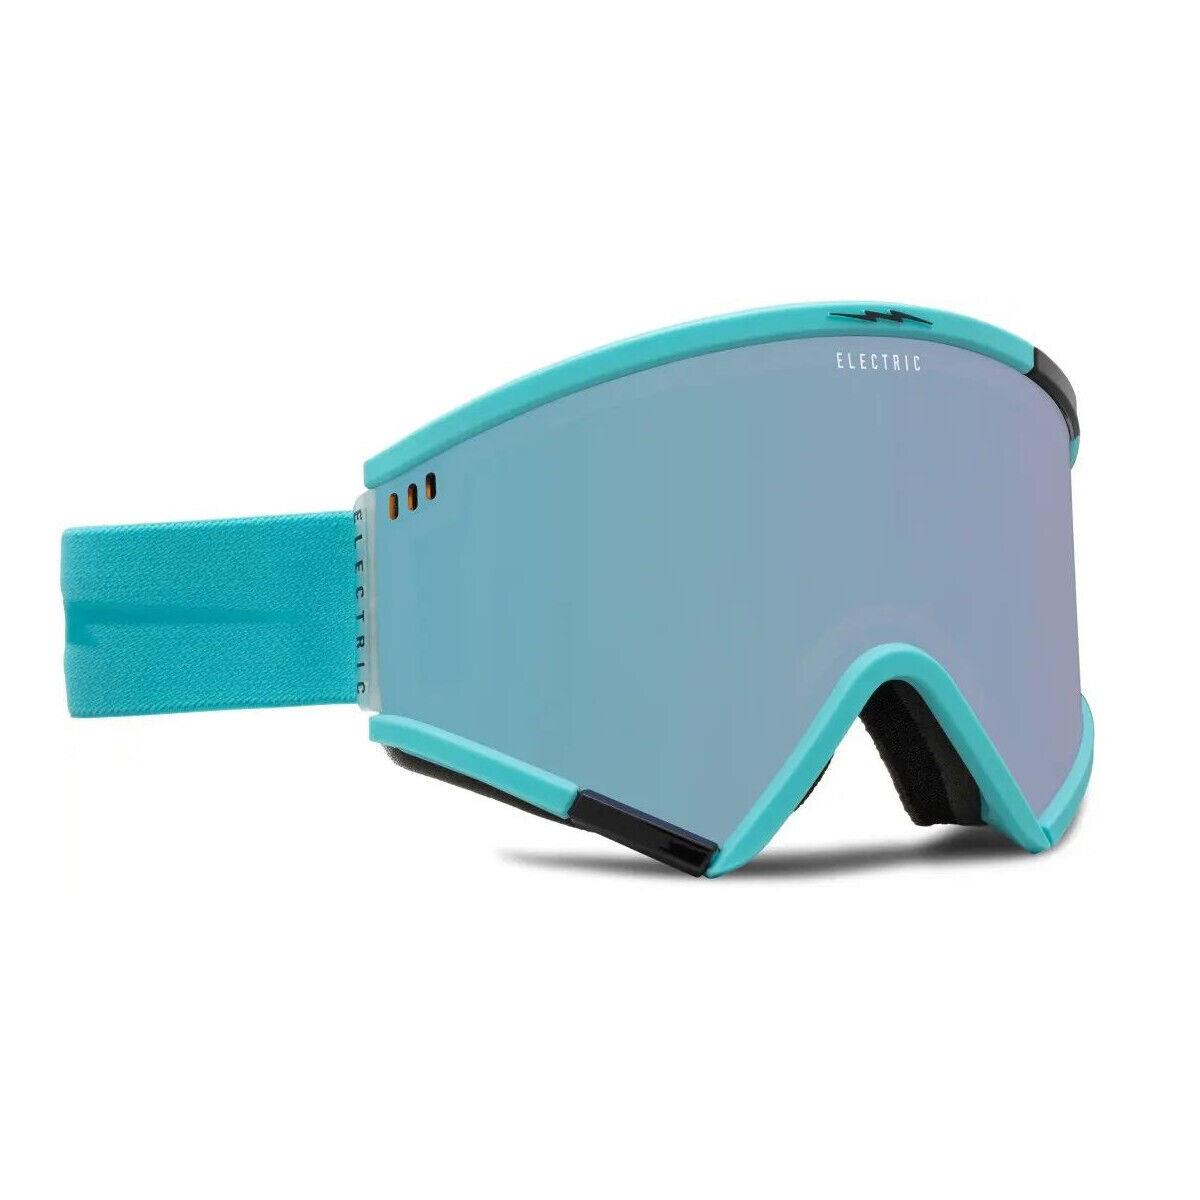 Electric Roteck Ski/snowboard Goggles MatteGlacier/AtomicIce